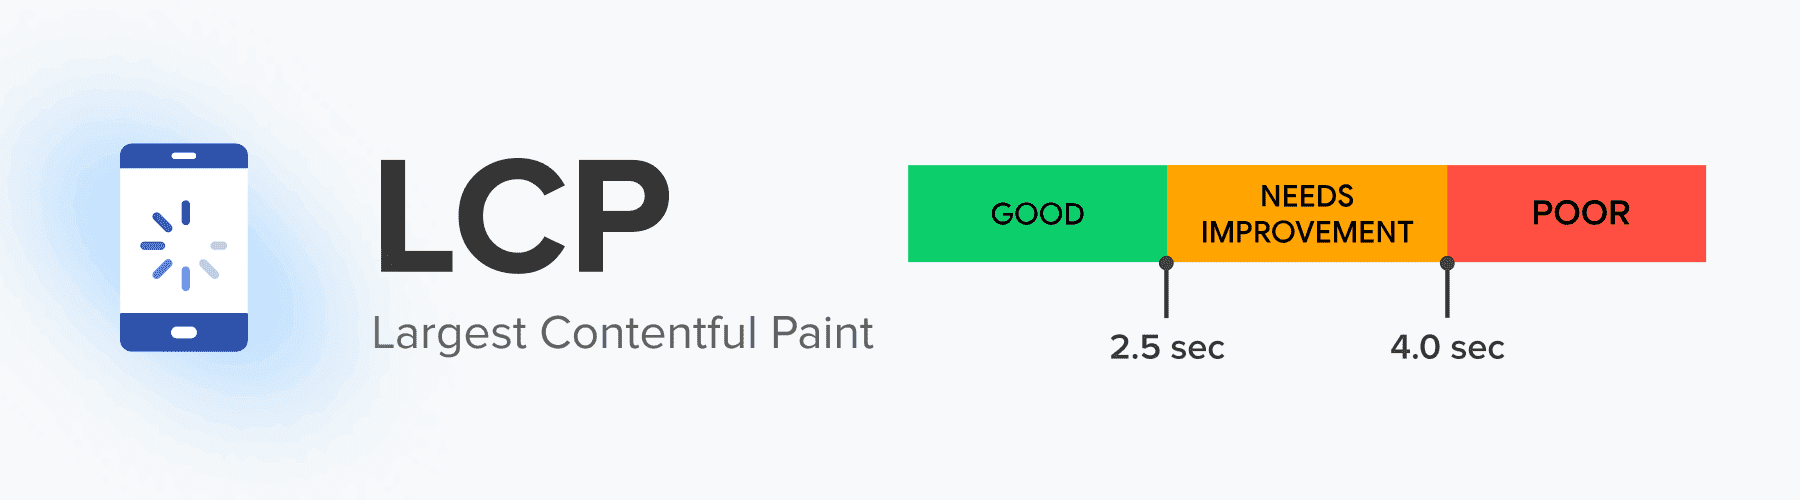 largest contentful paint lcp